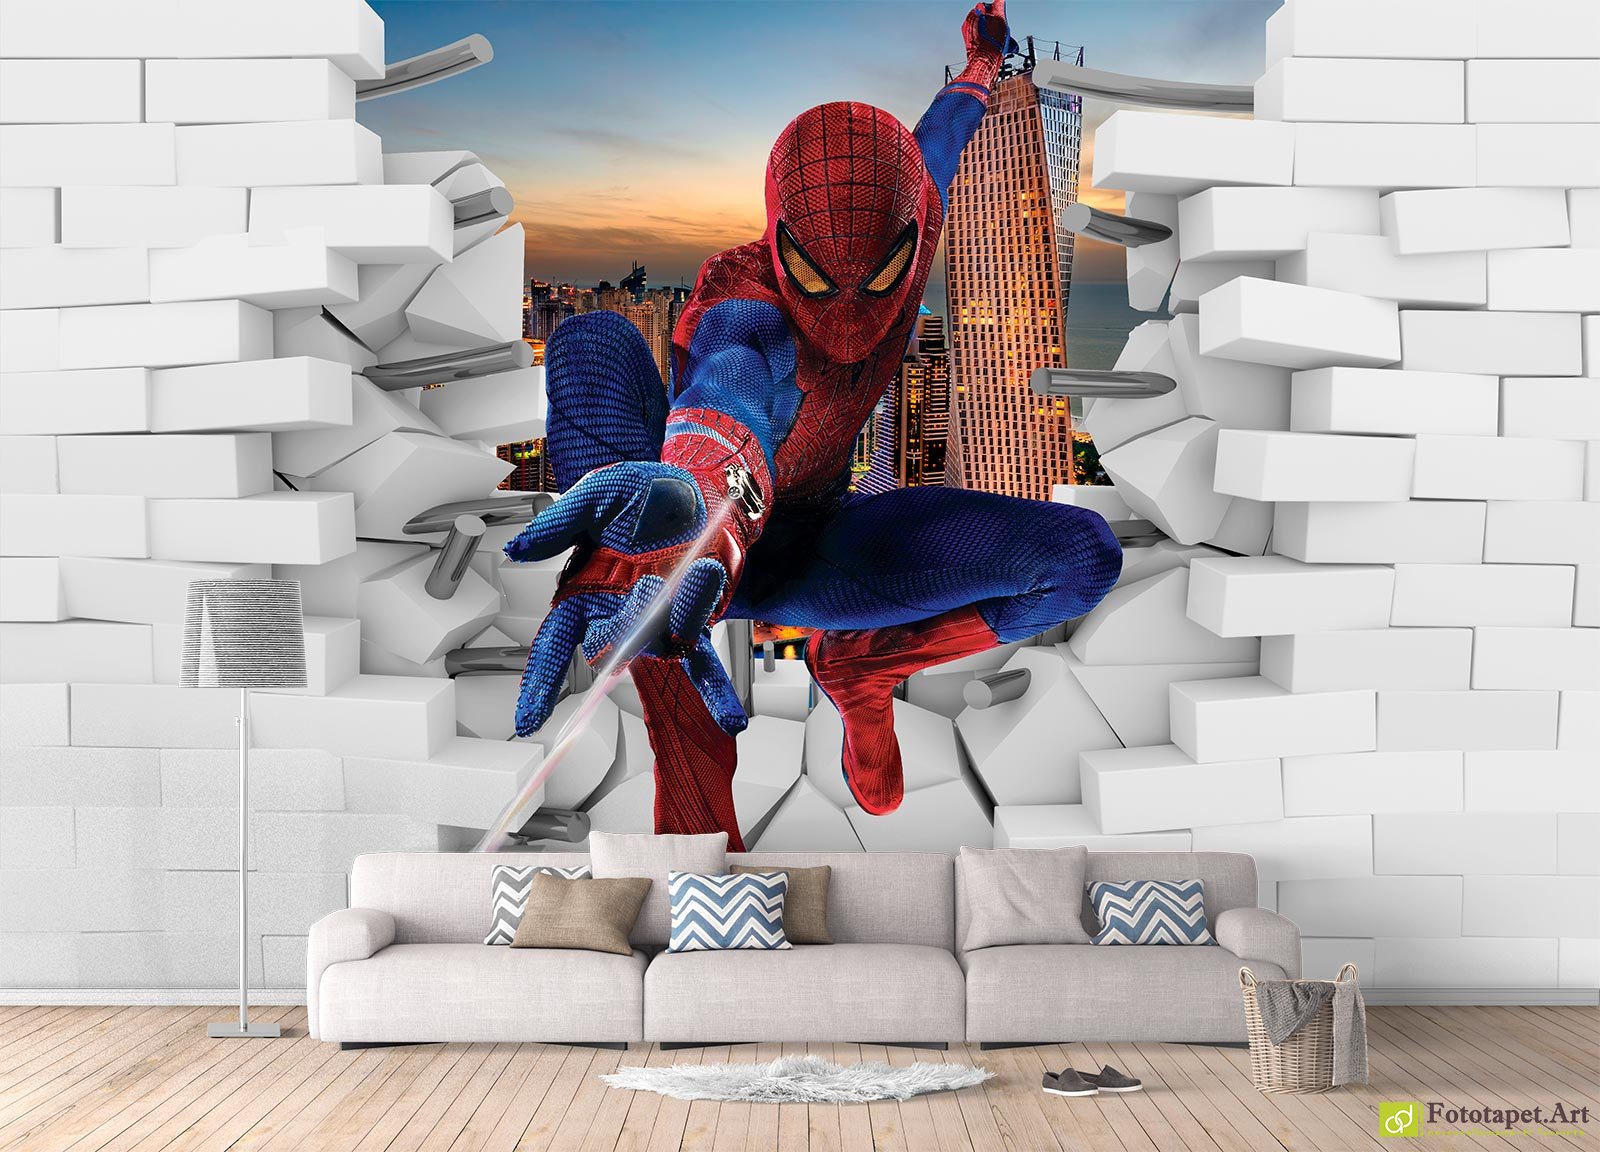 Amazing Spider-man - 2013 Calendar , HD Wallpaper & Backgrounds